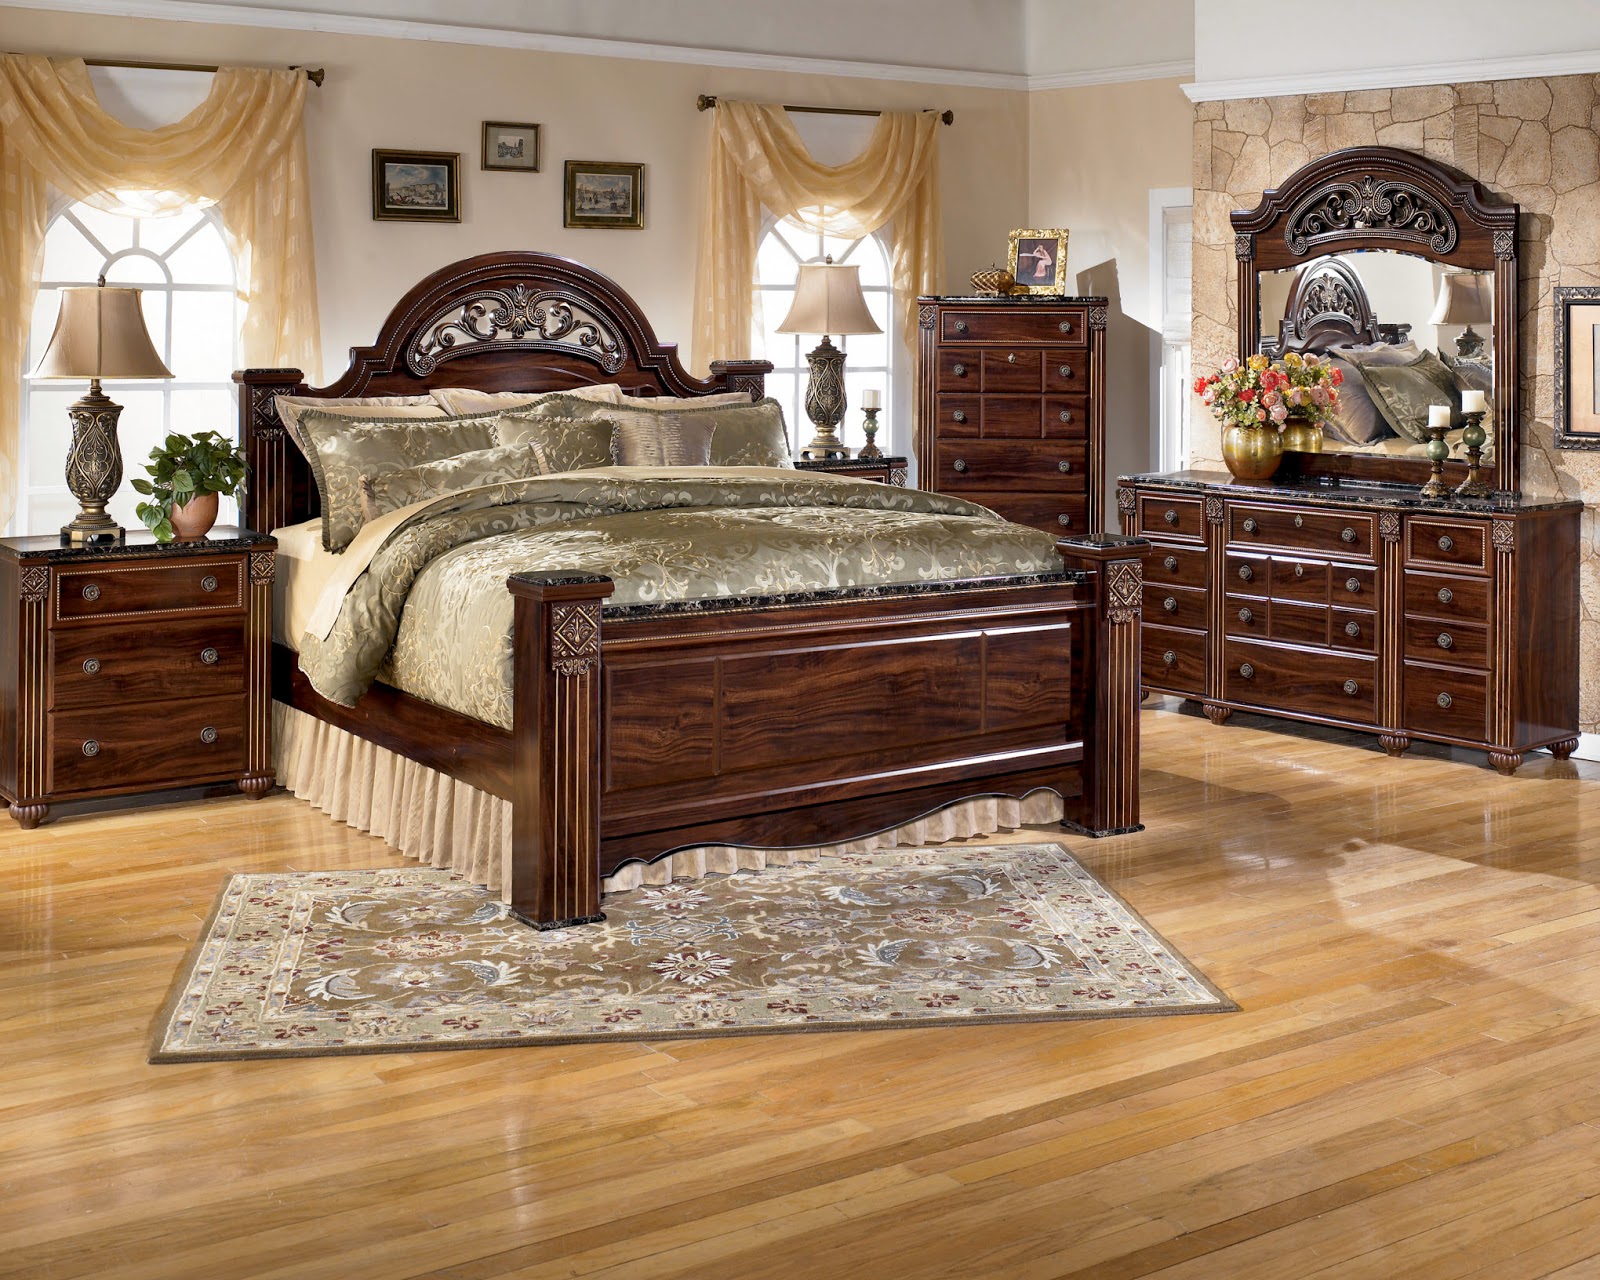  Ashley  Furniture  Bedroom  Sets  On Sale Popular Interior 